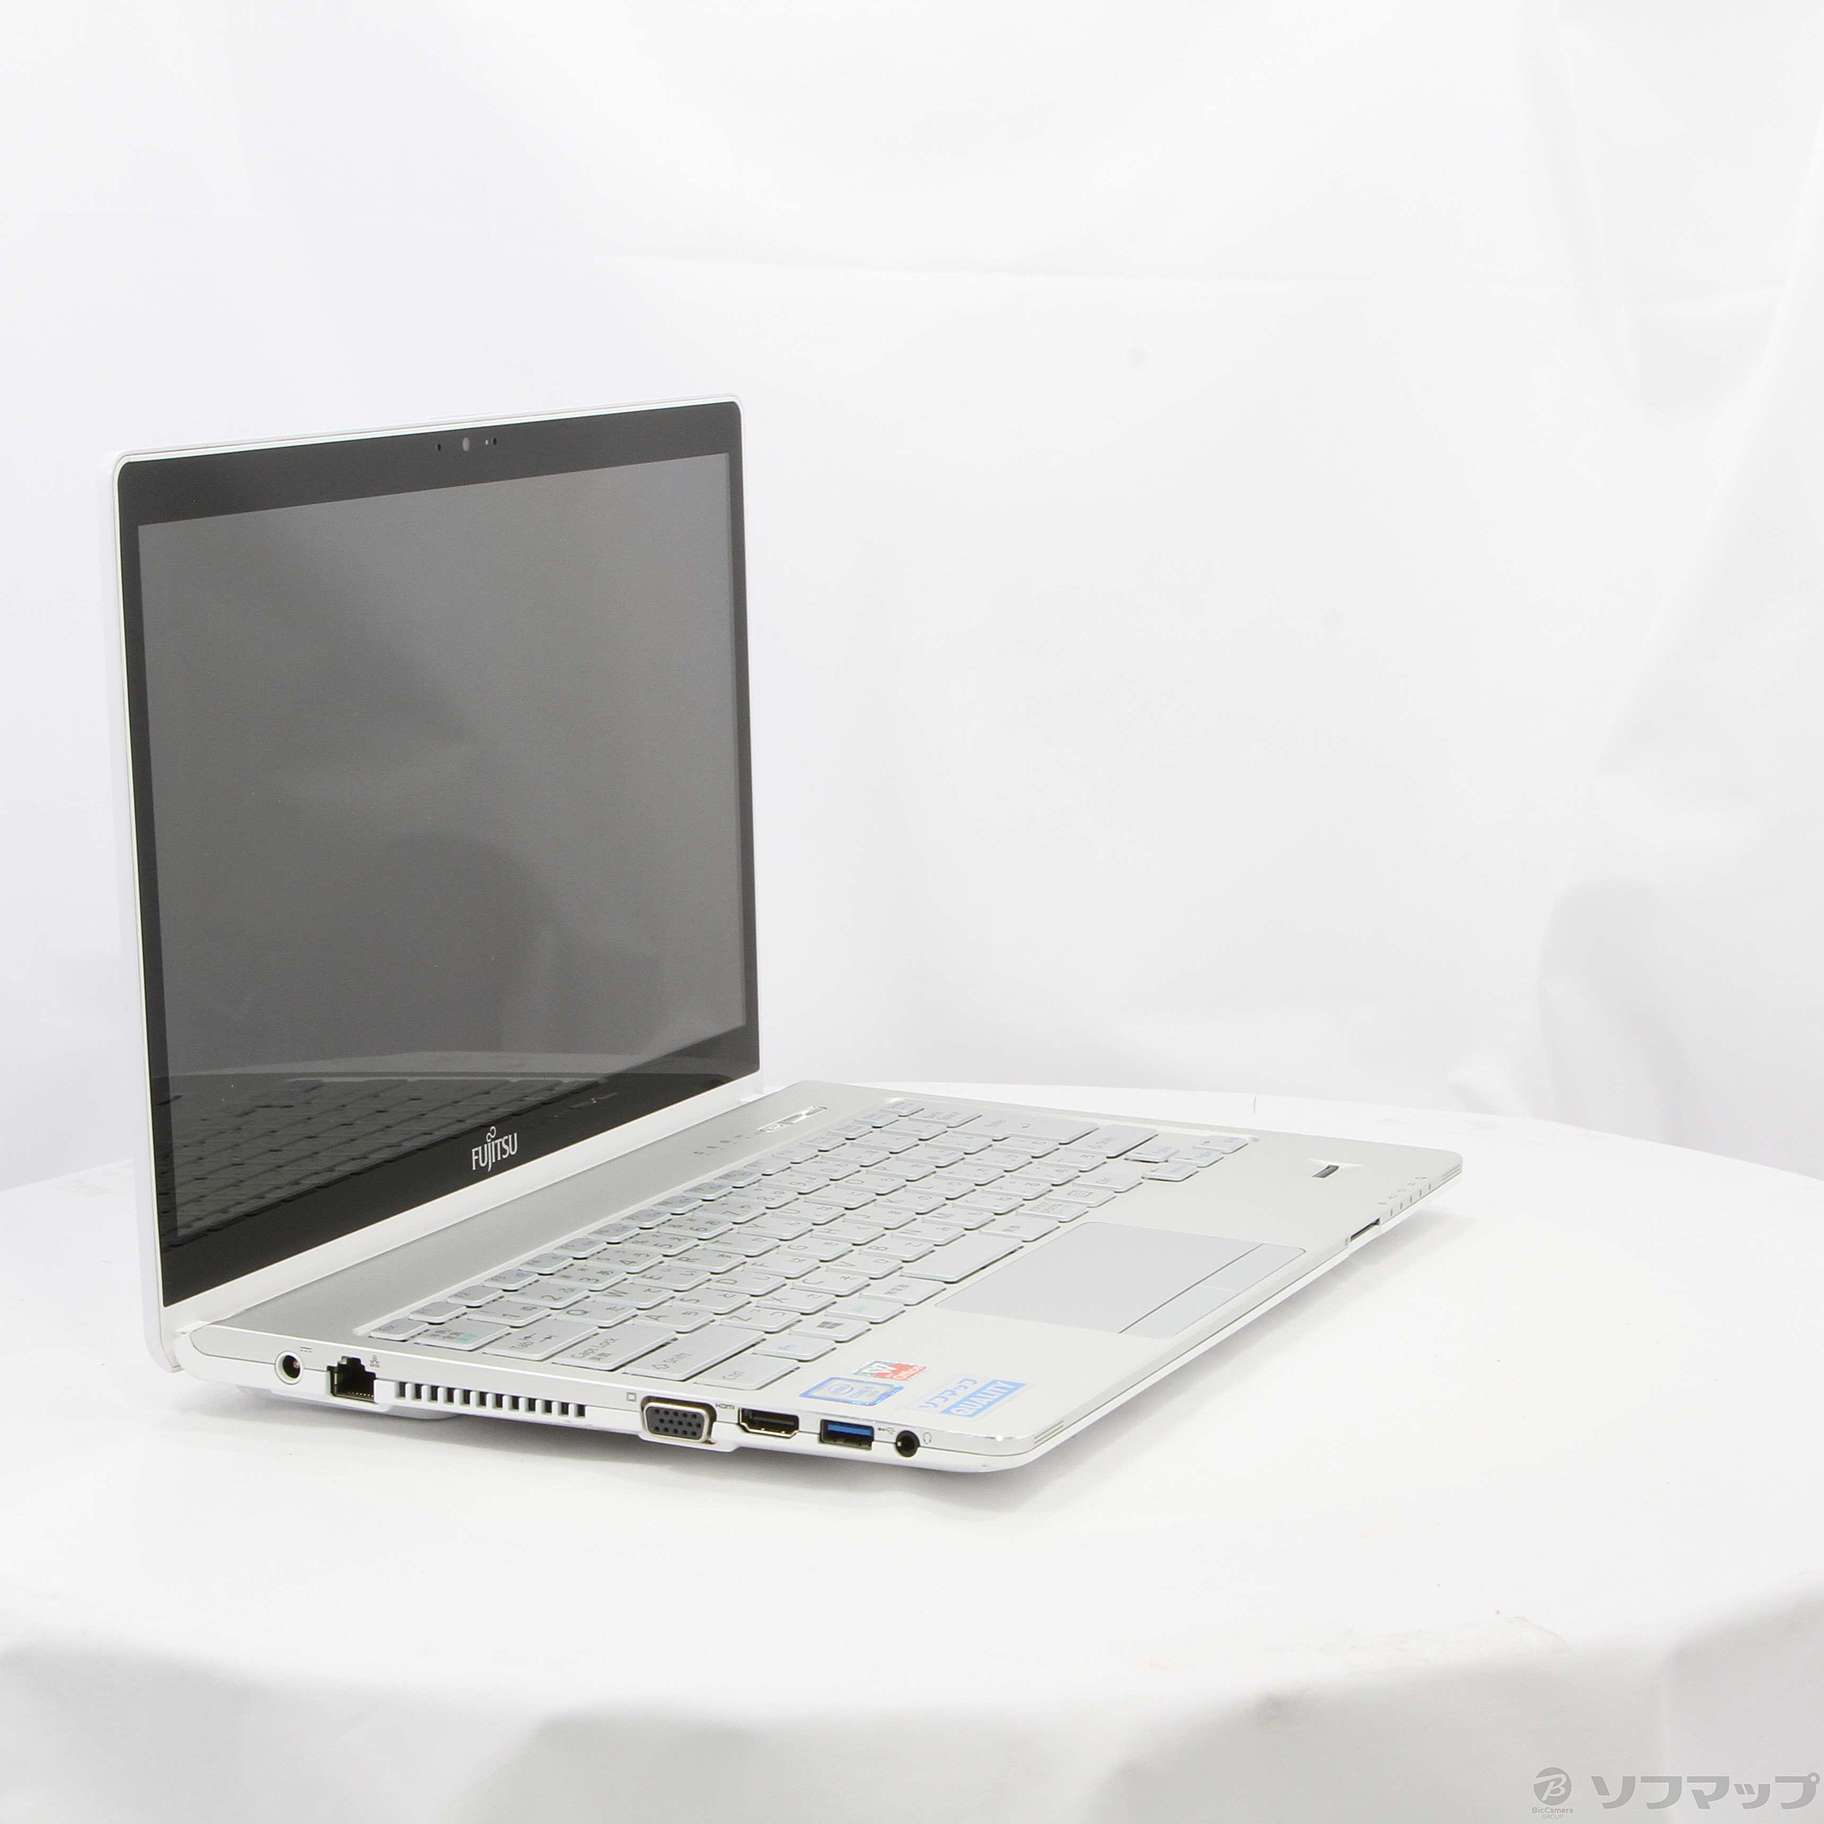 6,370円富士通 タッチパネル 13.3型ワイド SH90/M ノートパソコン PC